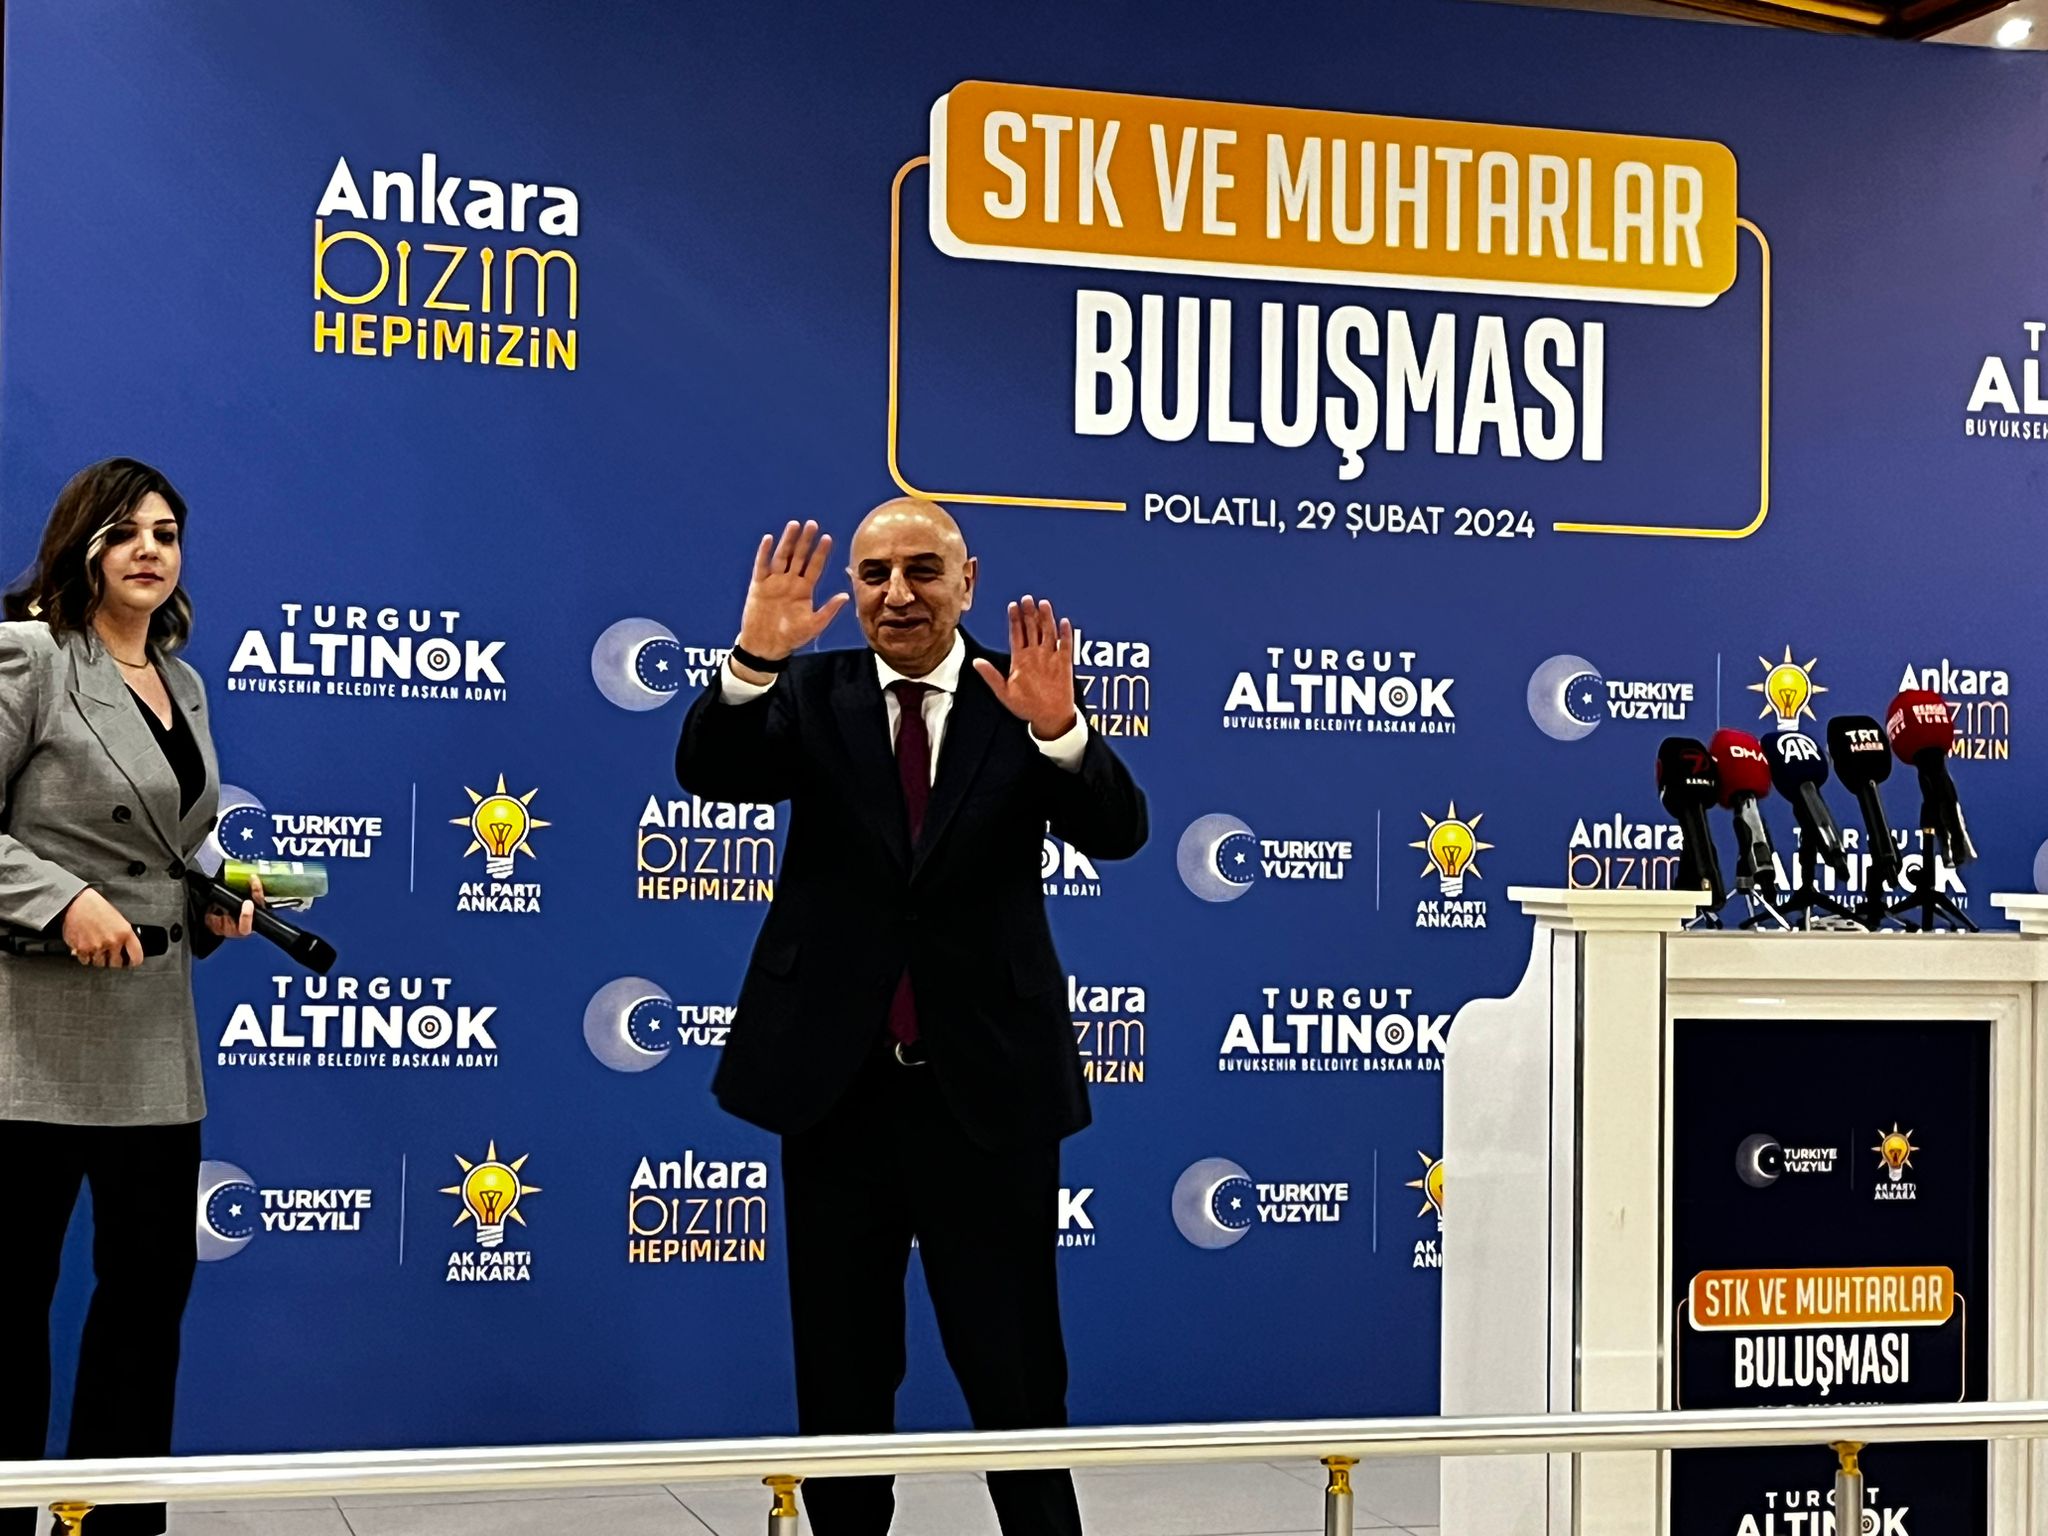 Cumhur İttifakı Ankara Büyükşehir Belediye Başkanı Altınok Polatlı'da Stk Ve Muhtarlarla Buluştu (7)